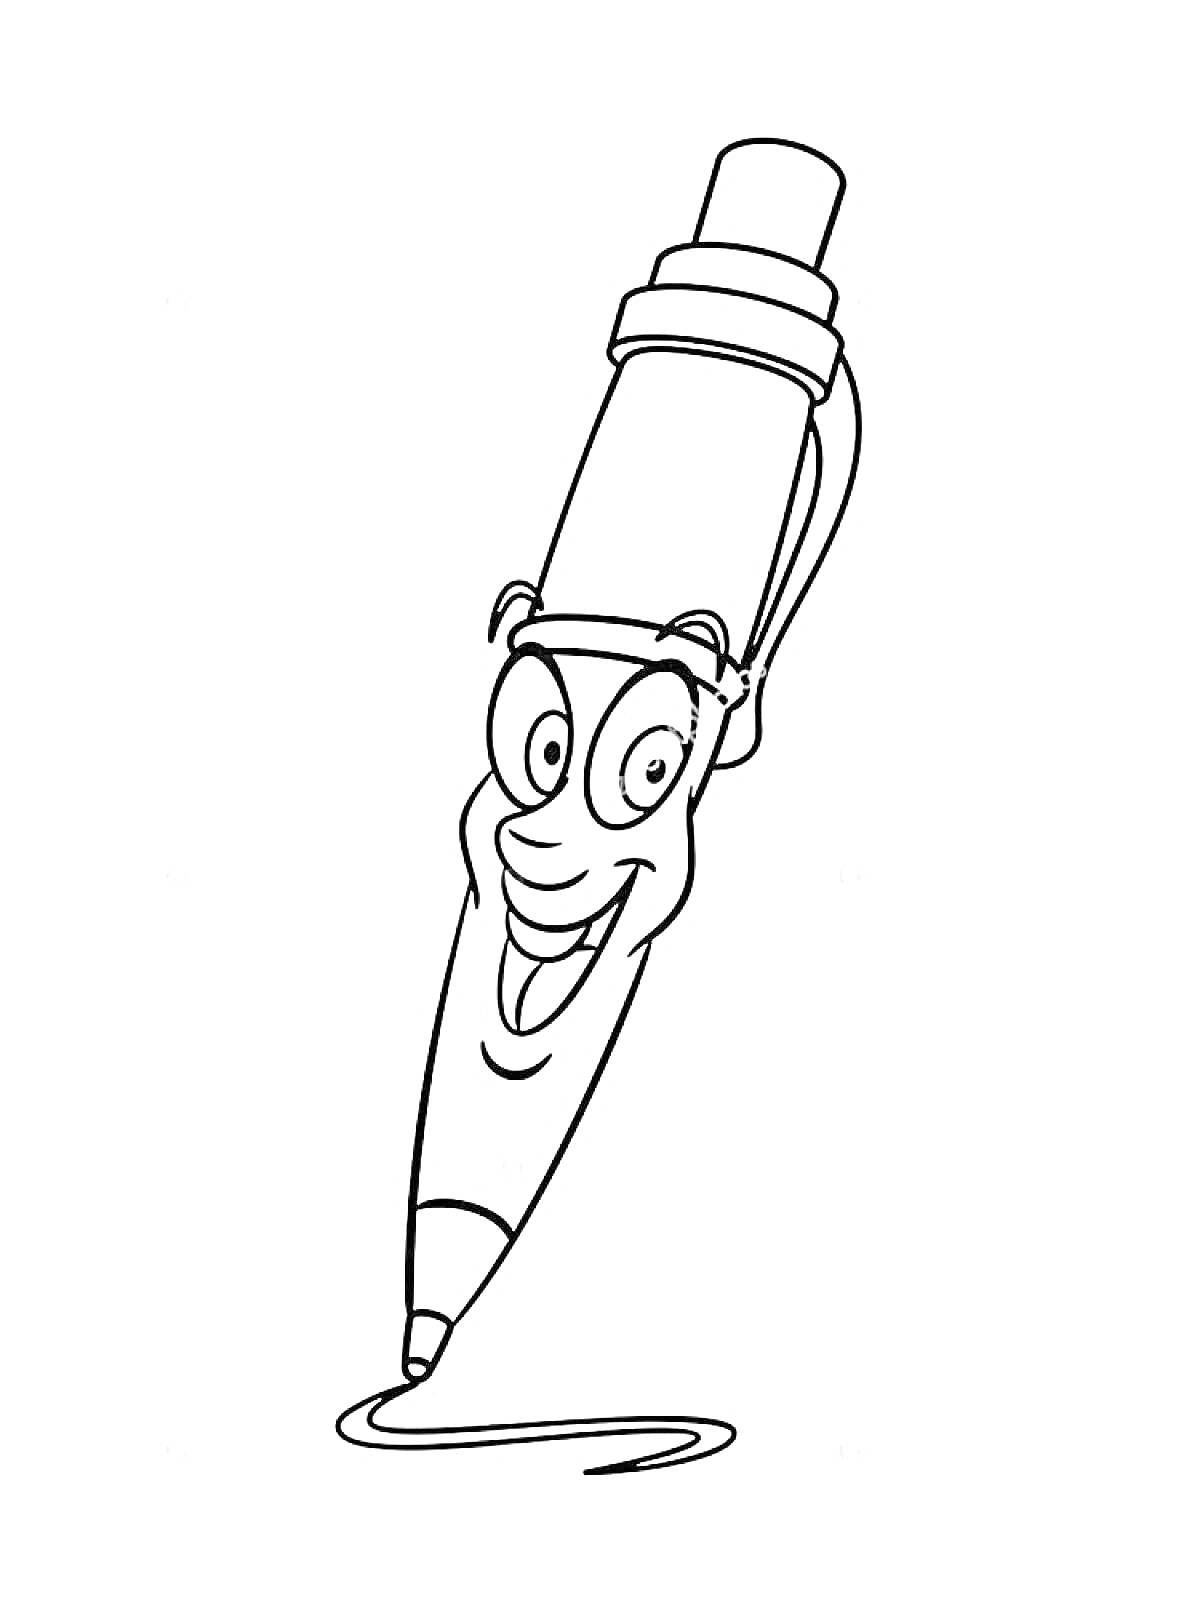 Раскраска Ожившая ручка улыбается и рисует линию